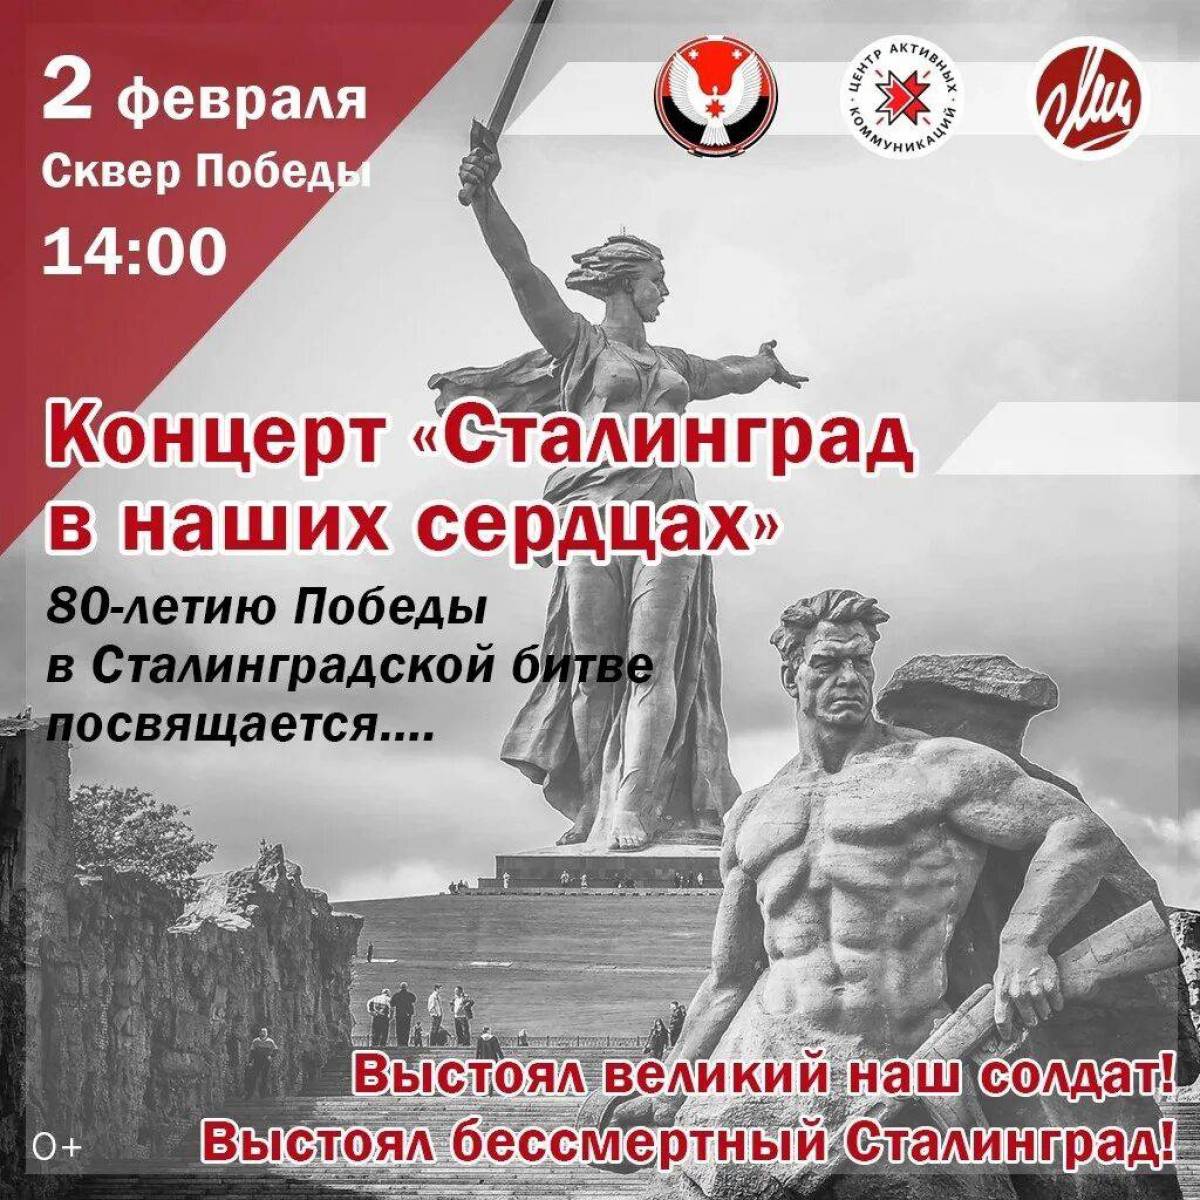 2 февраля сталинградская битва #27